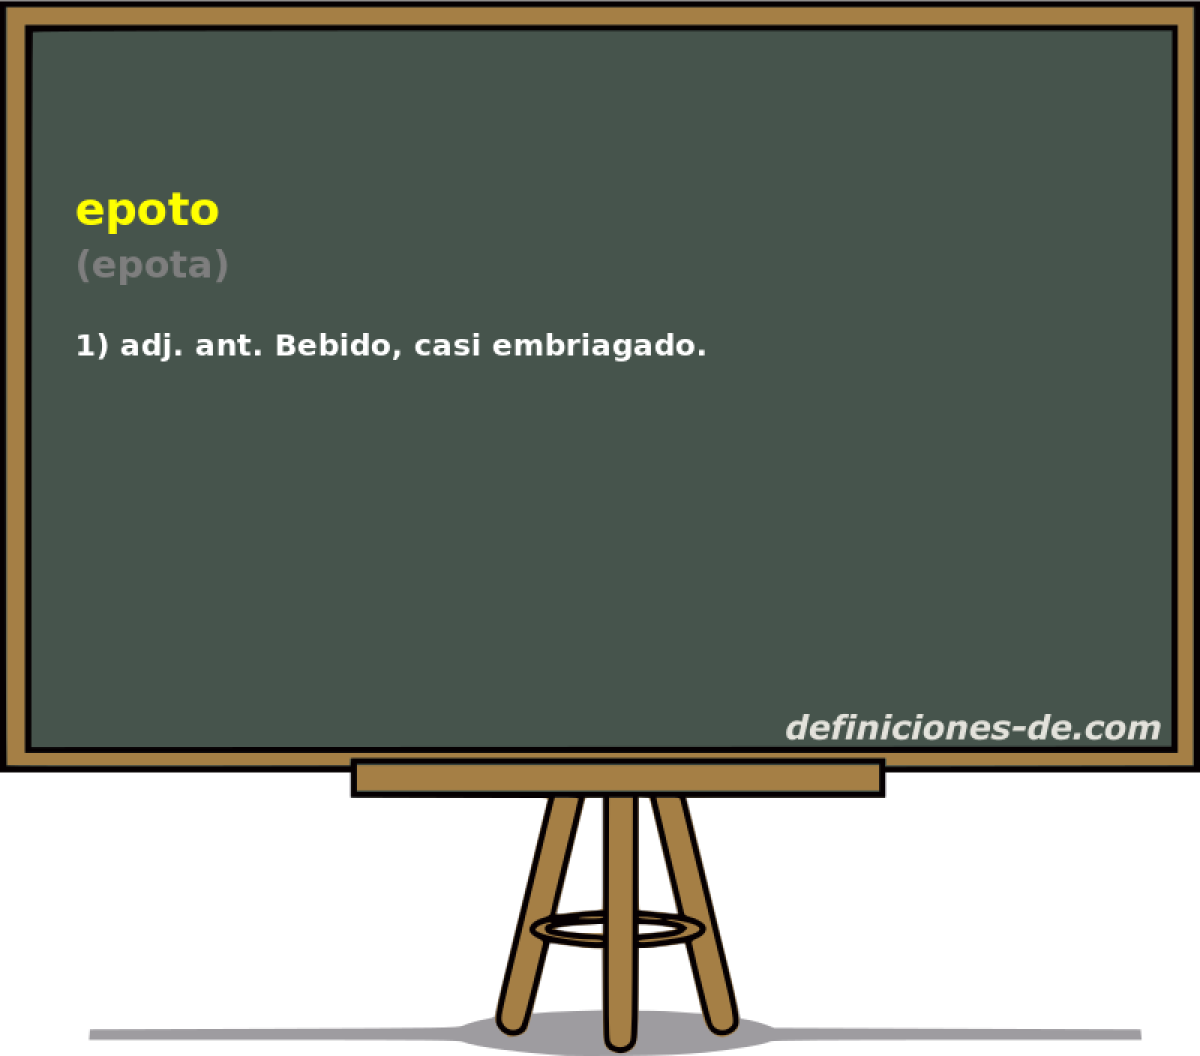 epoto (epota)